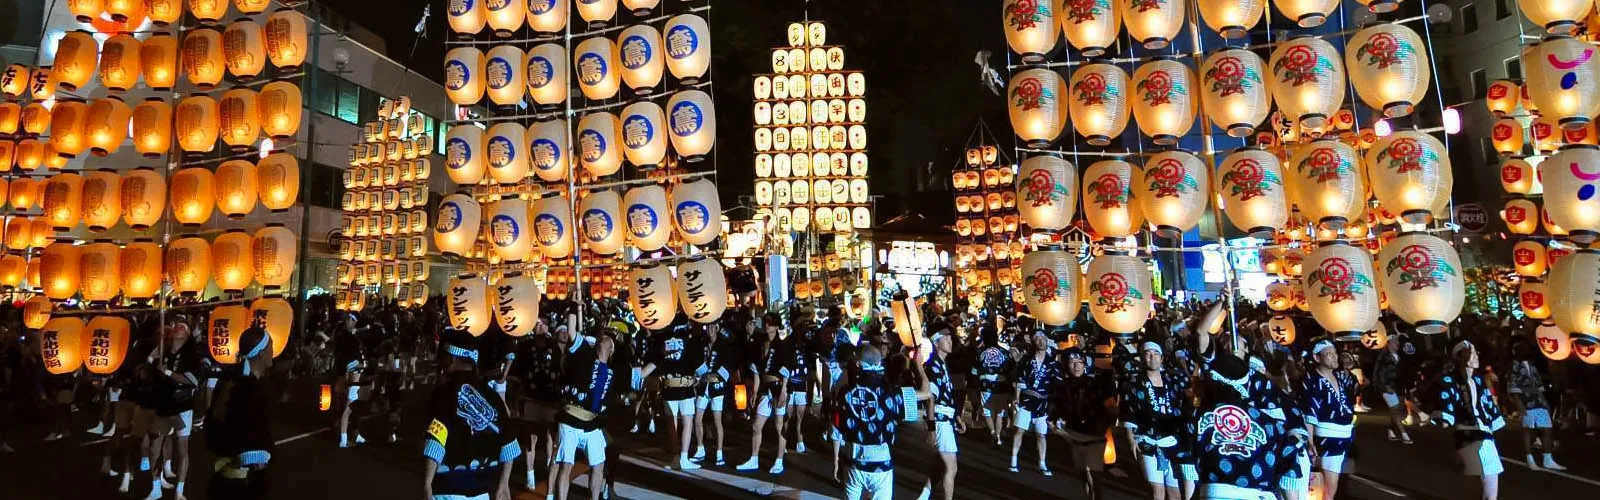 festival in Japan